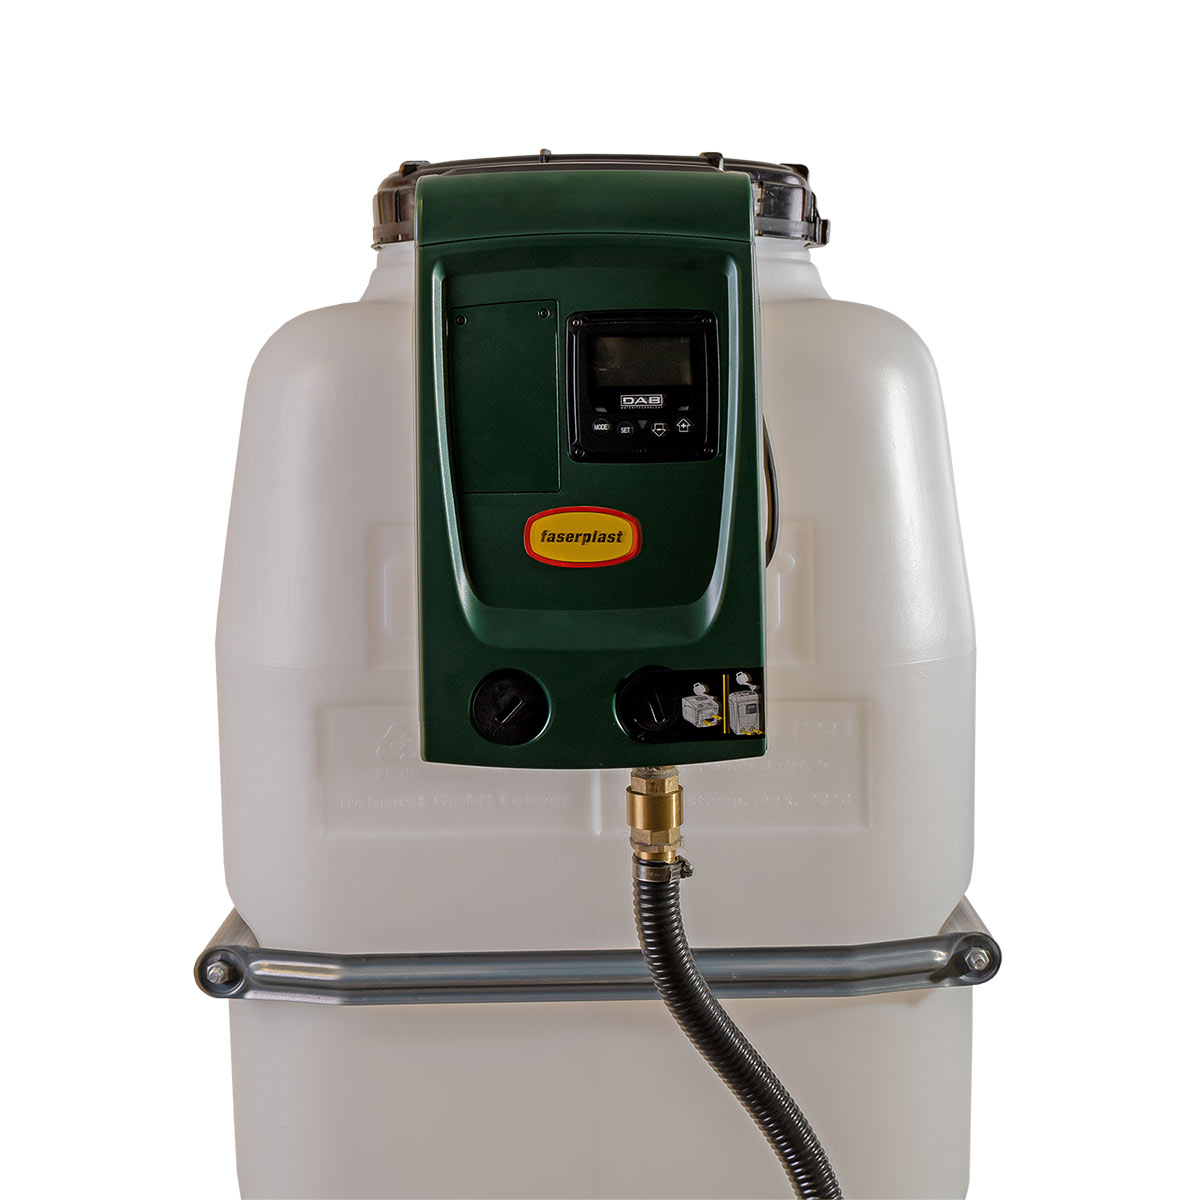 Hauswasseranlage HaWa 3000, mit aufgebauter Pumpe e.sybox mini 3